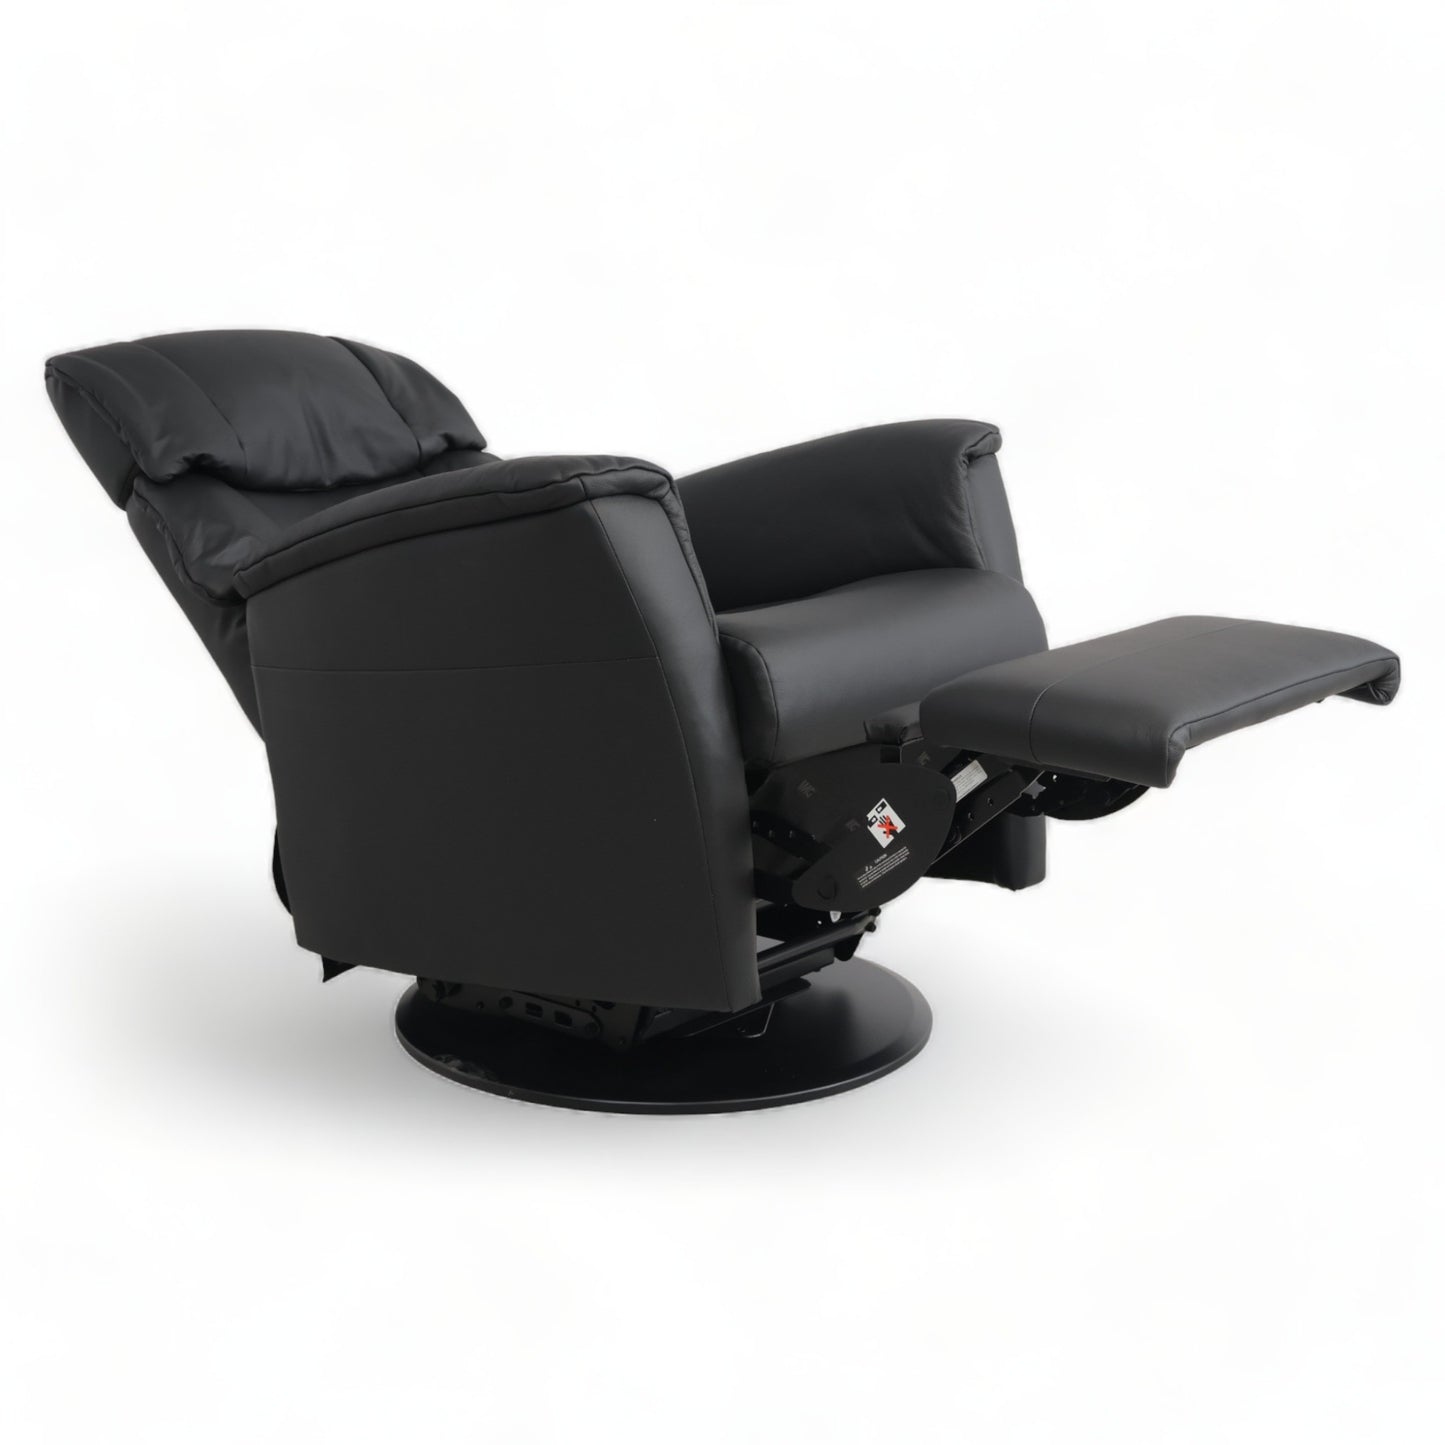 Ubrukt | Sort Ventura stol med recliner i skinn fra IMG